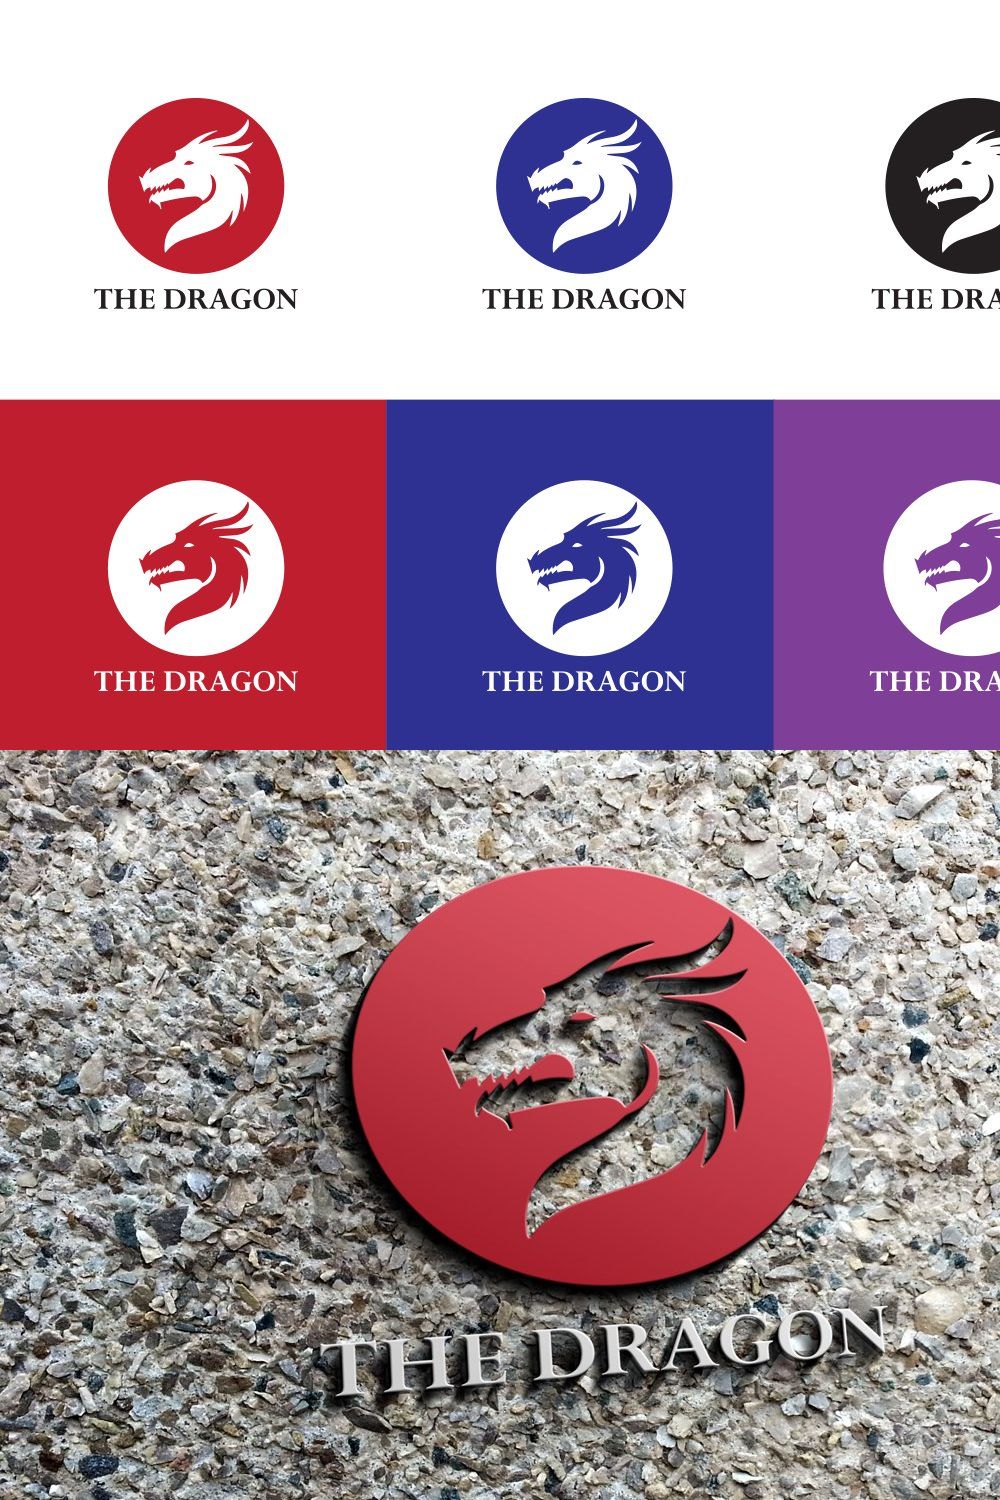 Dragon logo pinterest preview image.